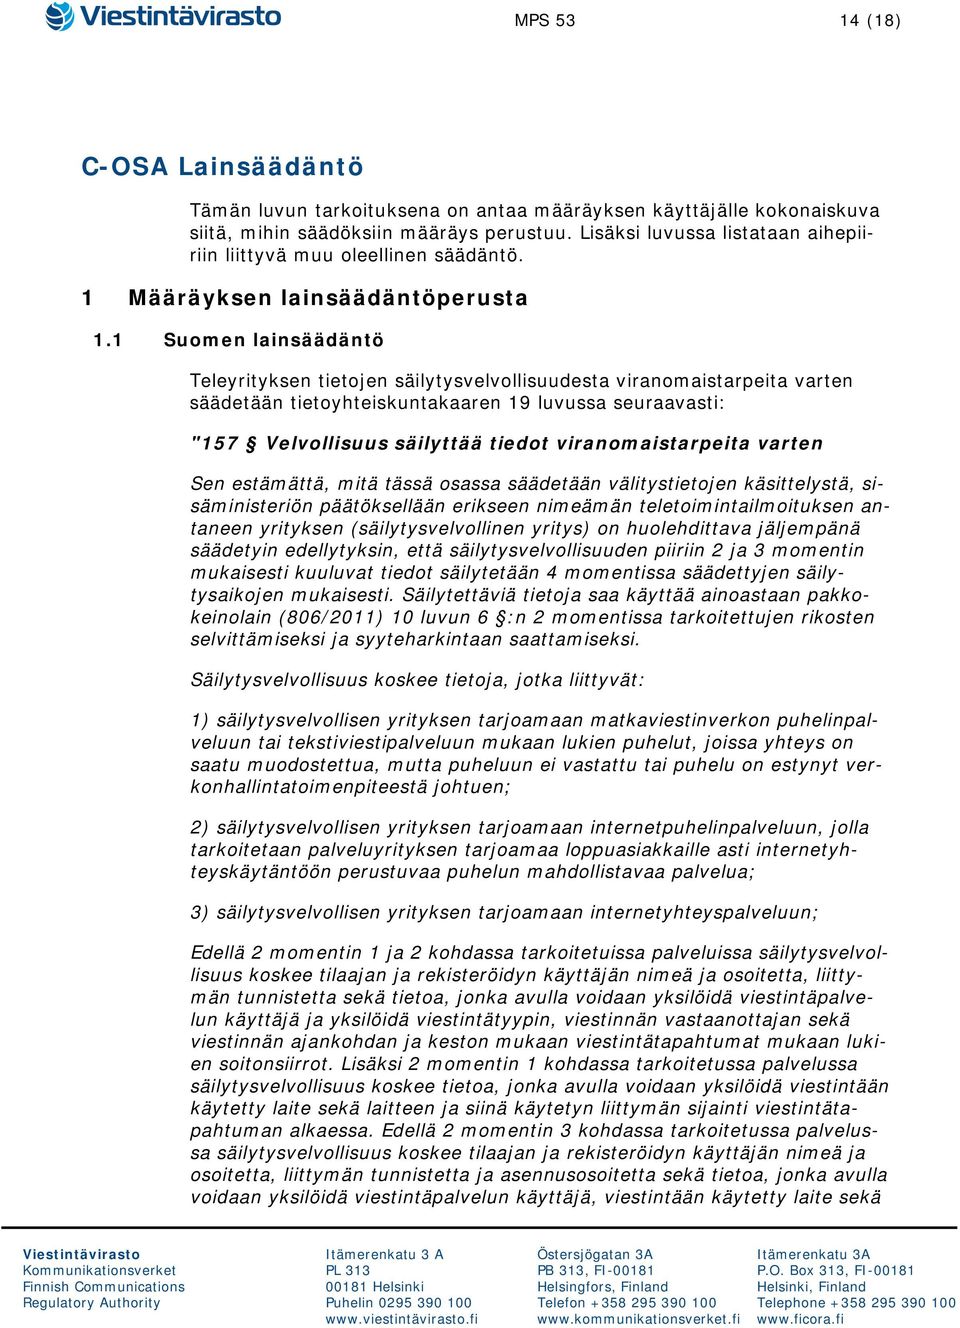 1 Suomen lainsäädäntö Teleyrityksen tietojen säilytysvelvollisuudesta viranomaistarpeita varten säädetään tietoyhteiskuntakaaren 19 luvussa seuraavasti: "157 Velvollisuus säilyttää tiedot